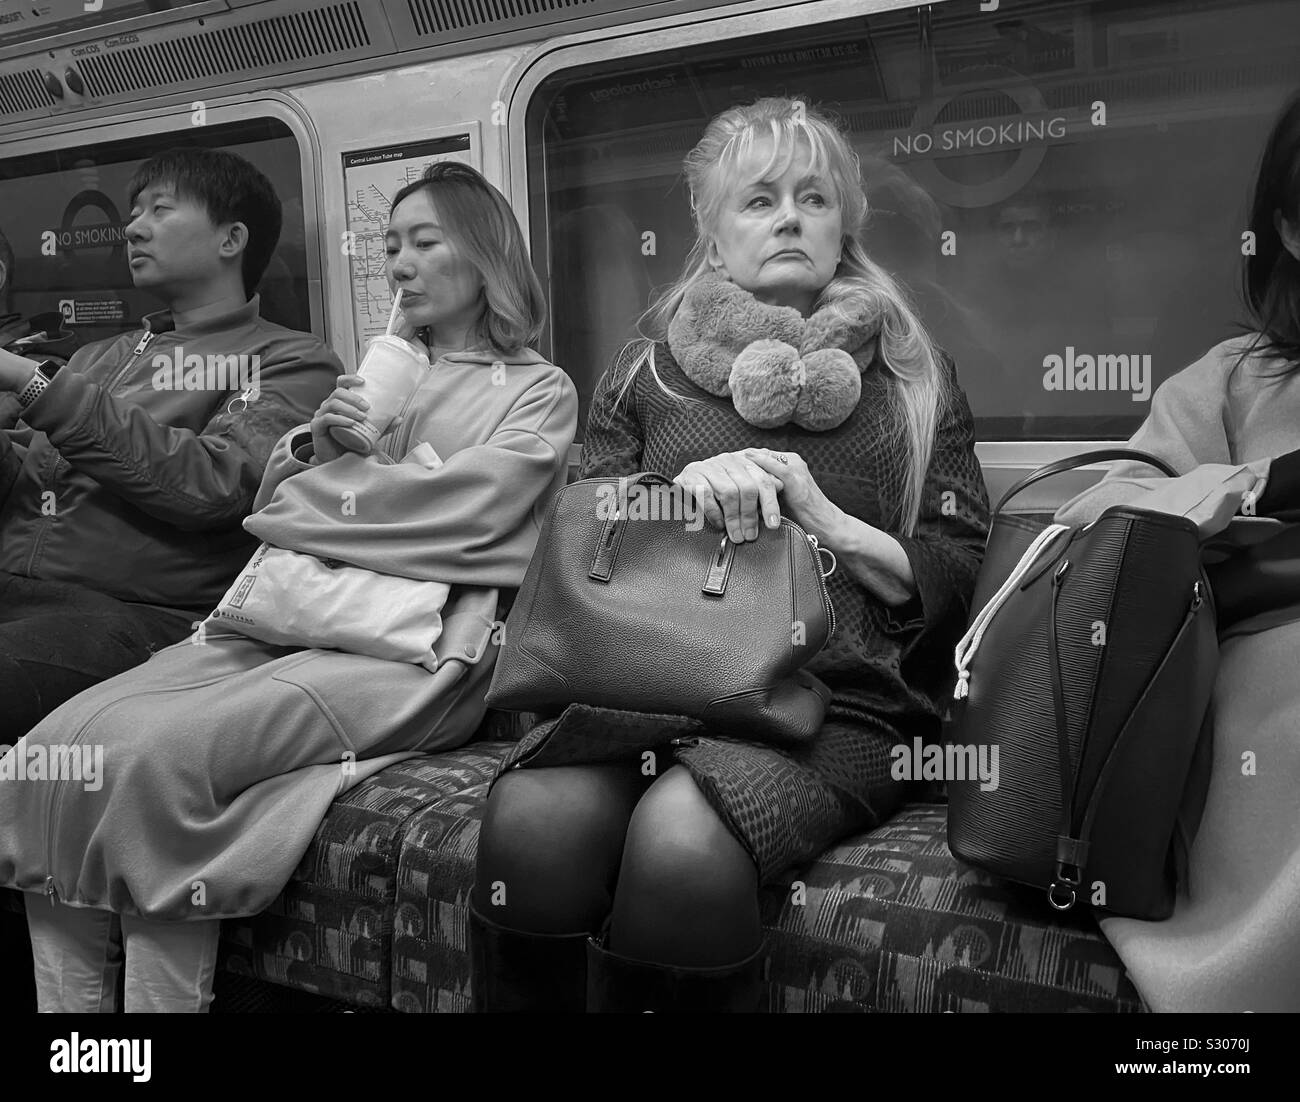 Leute in einer geschäftigen U-Bahn in London, die Dame suchte den perfekten Ort, um ein Foto zu machen Stockfoto